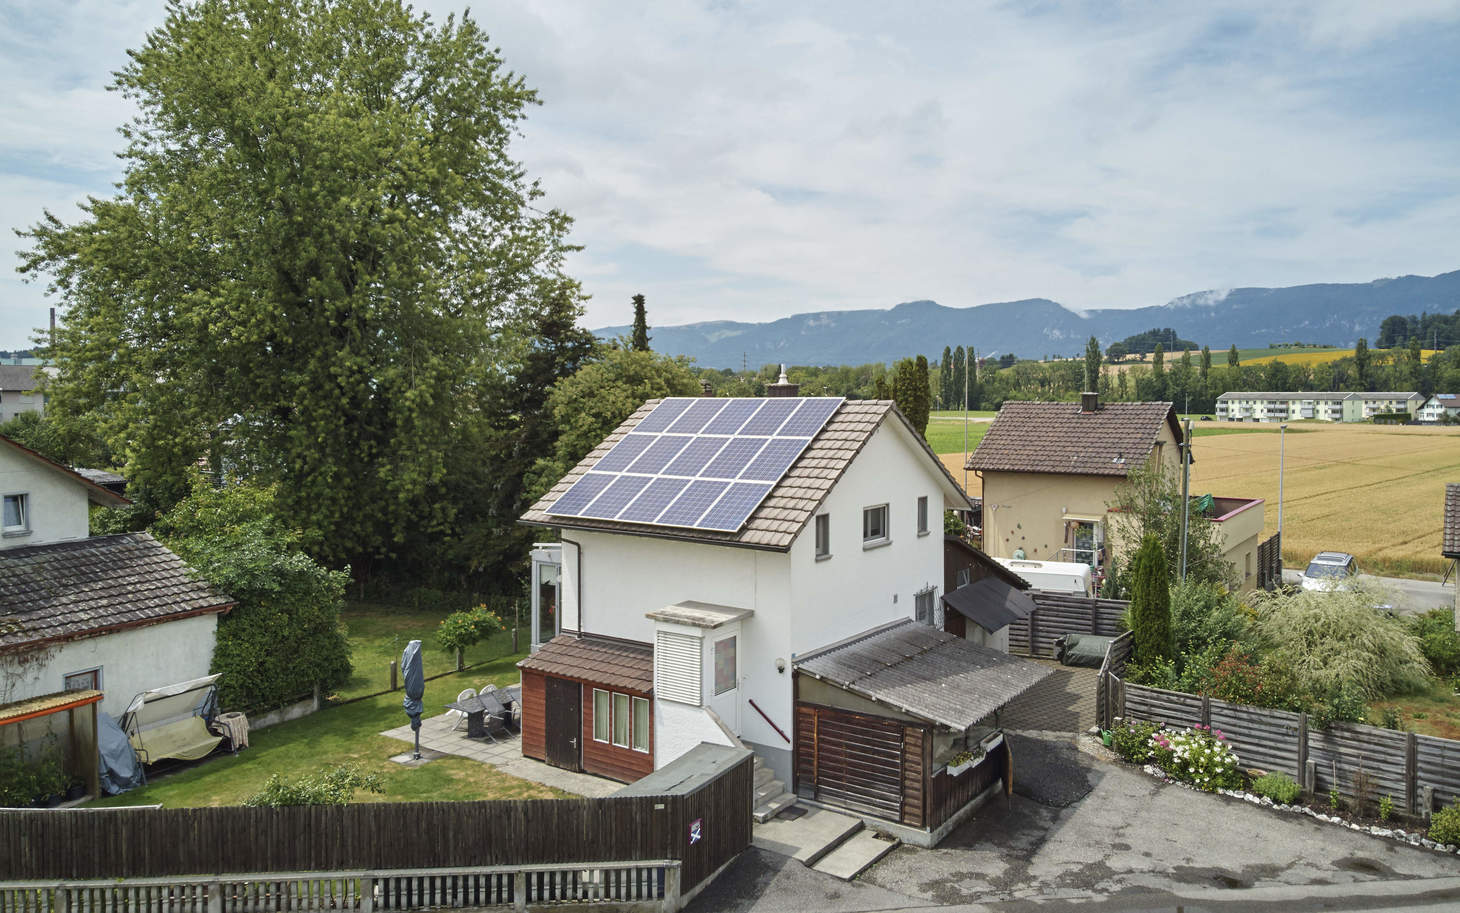 Einfamilienhaus mit Photovoltaik-Anlage